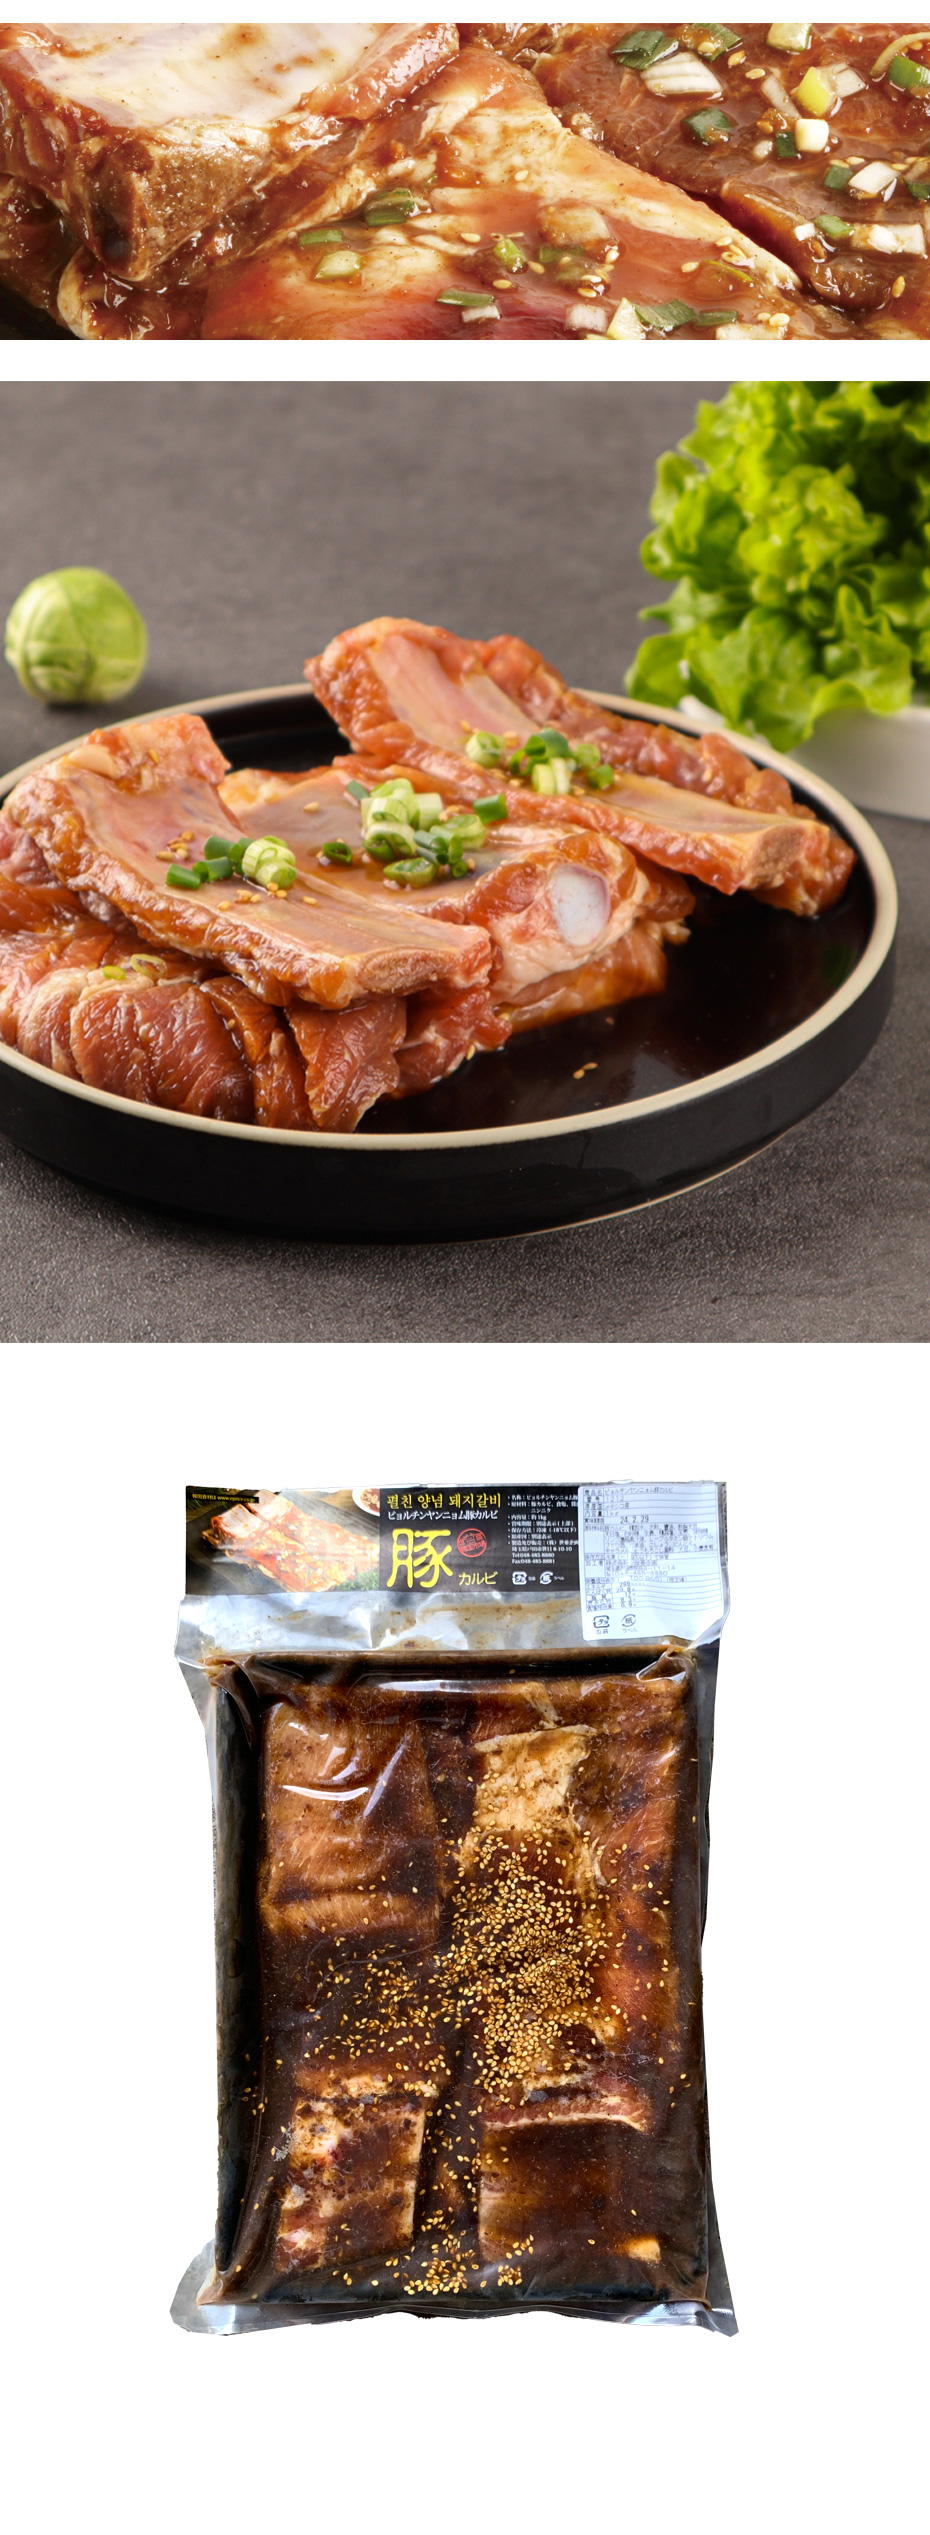 [豚肉] ピョルチンヤンニョム(味付け) 骨付き豚カルビ1kg